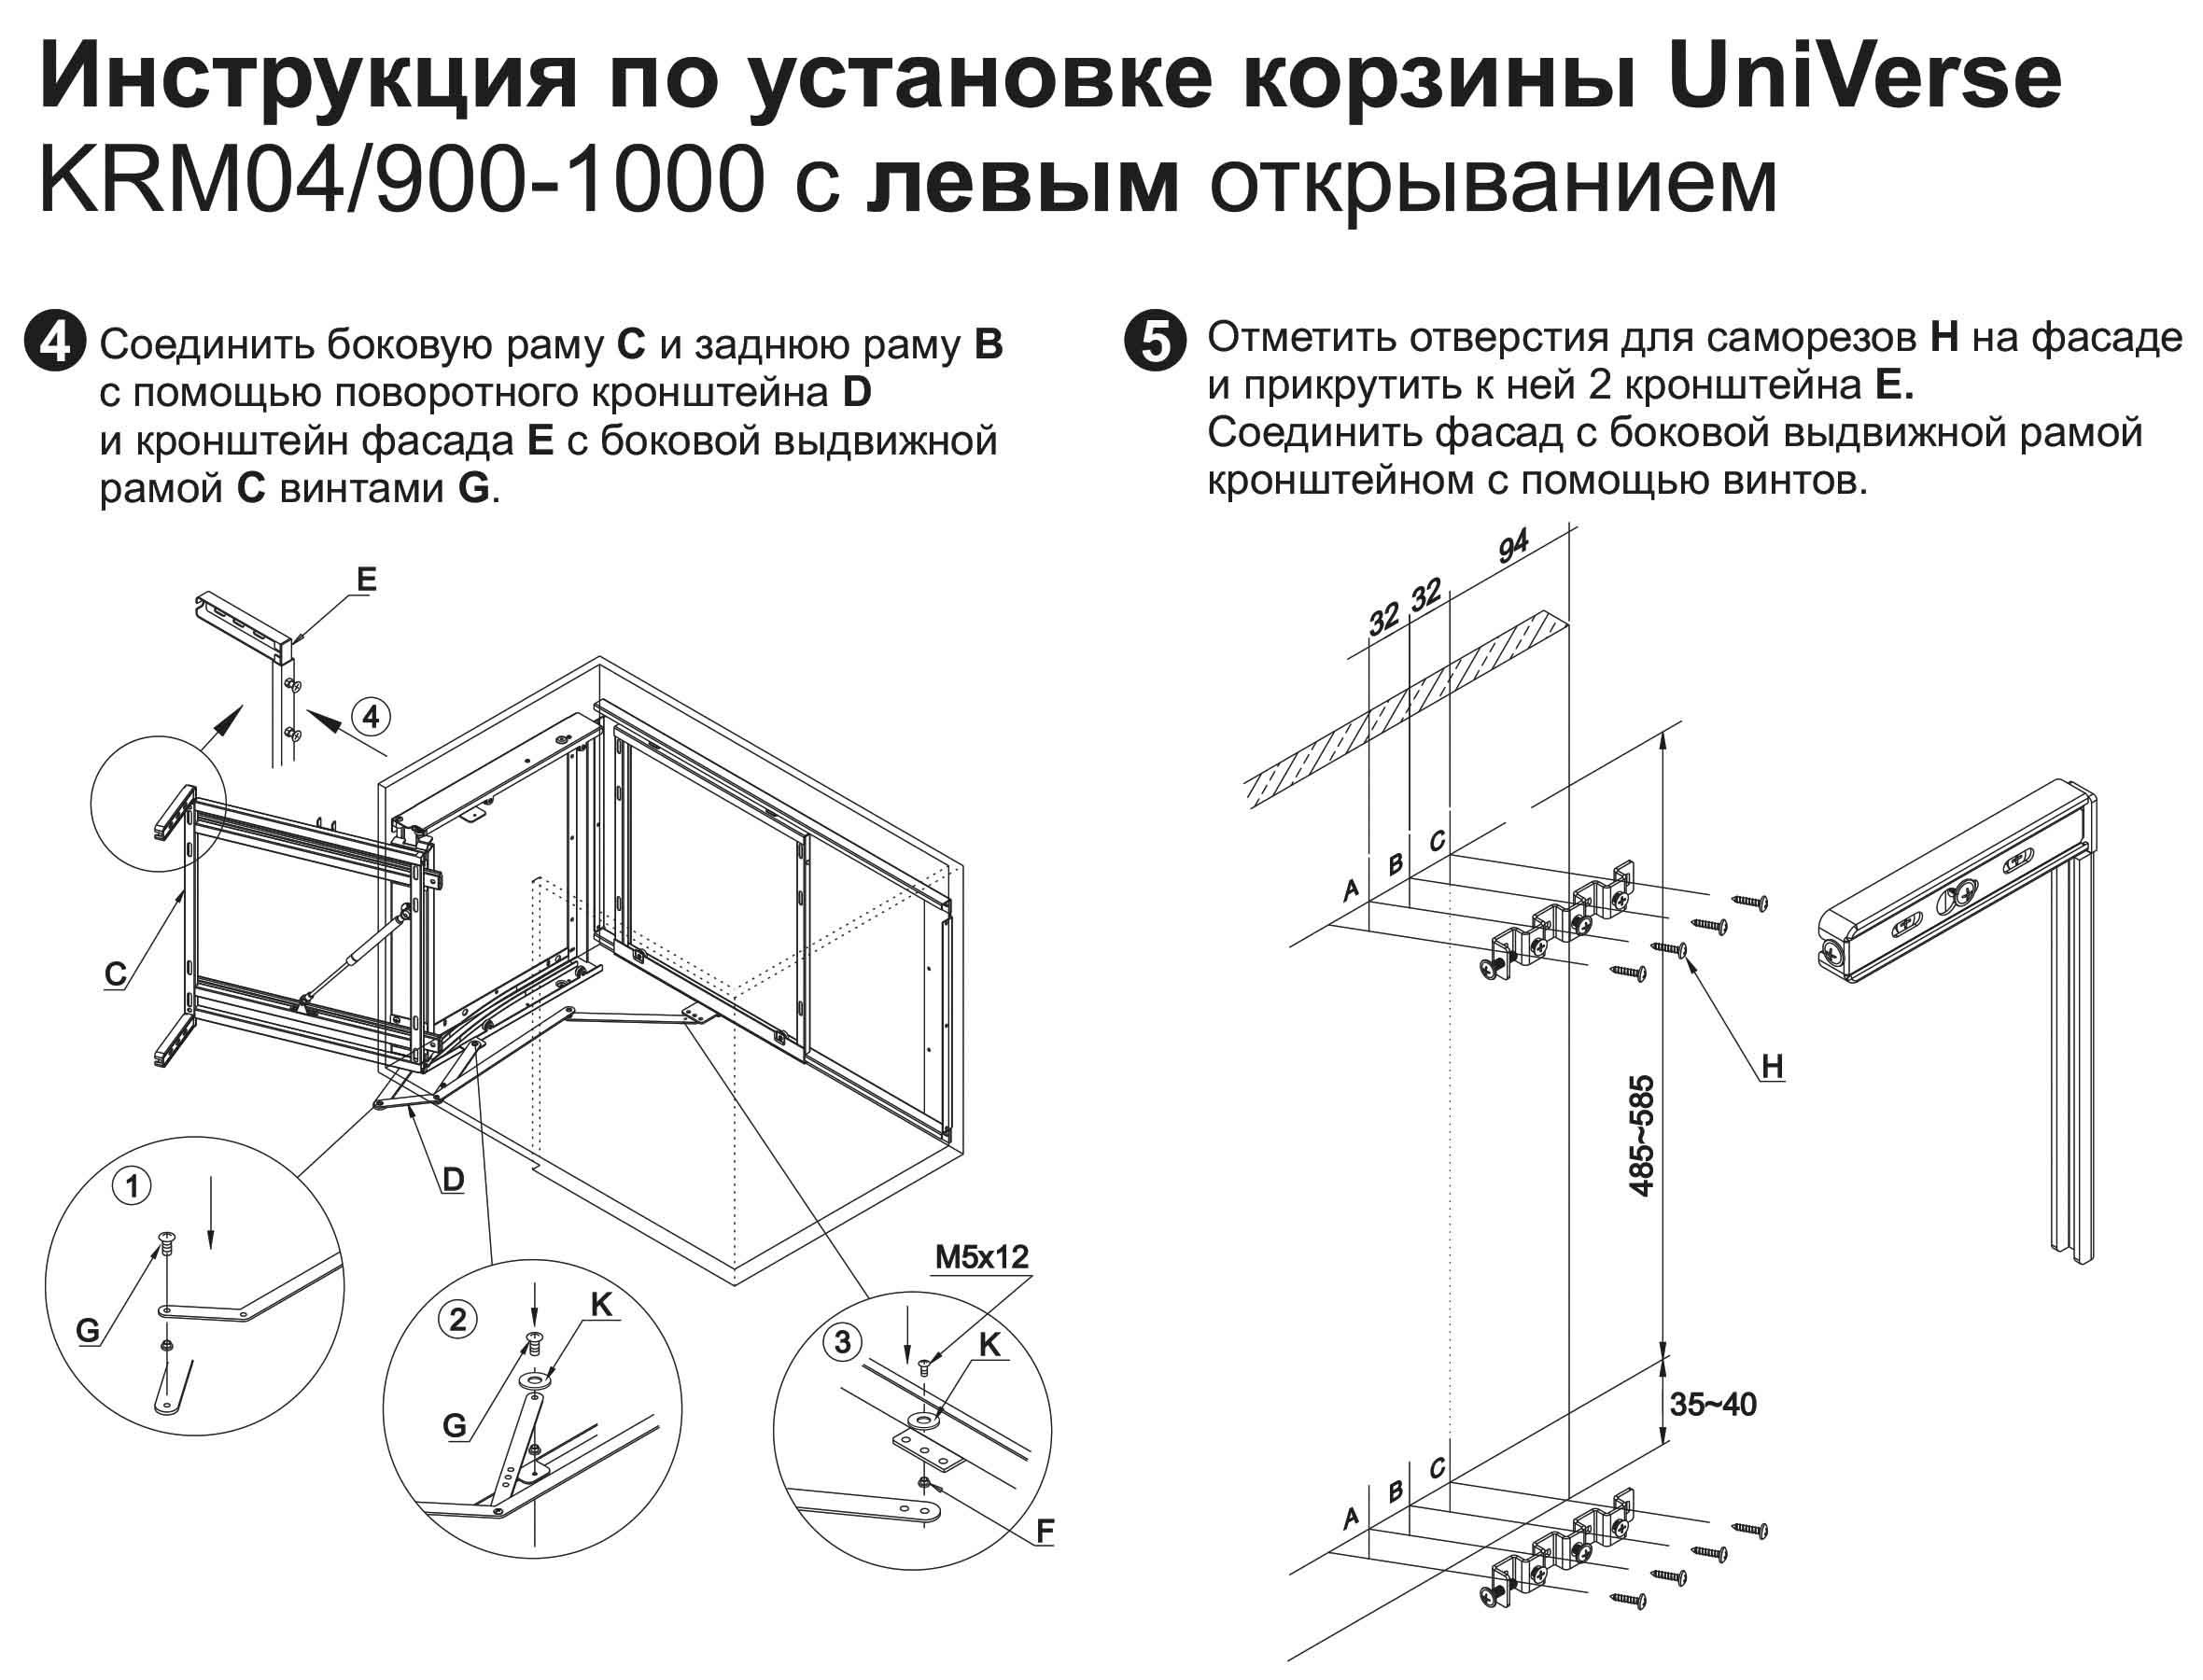 Выкатная корзина для кухни Universe krm04/900-1000